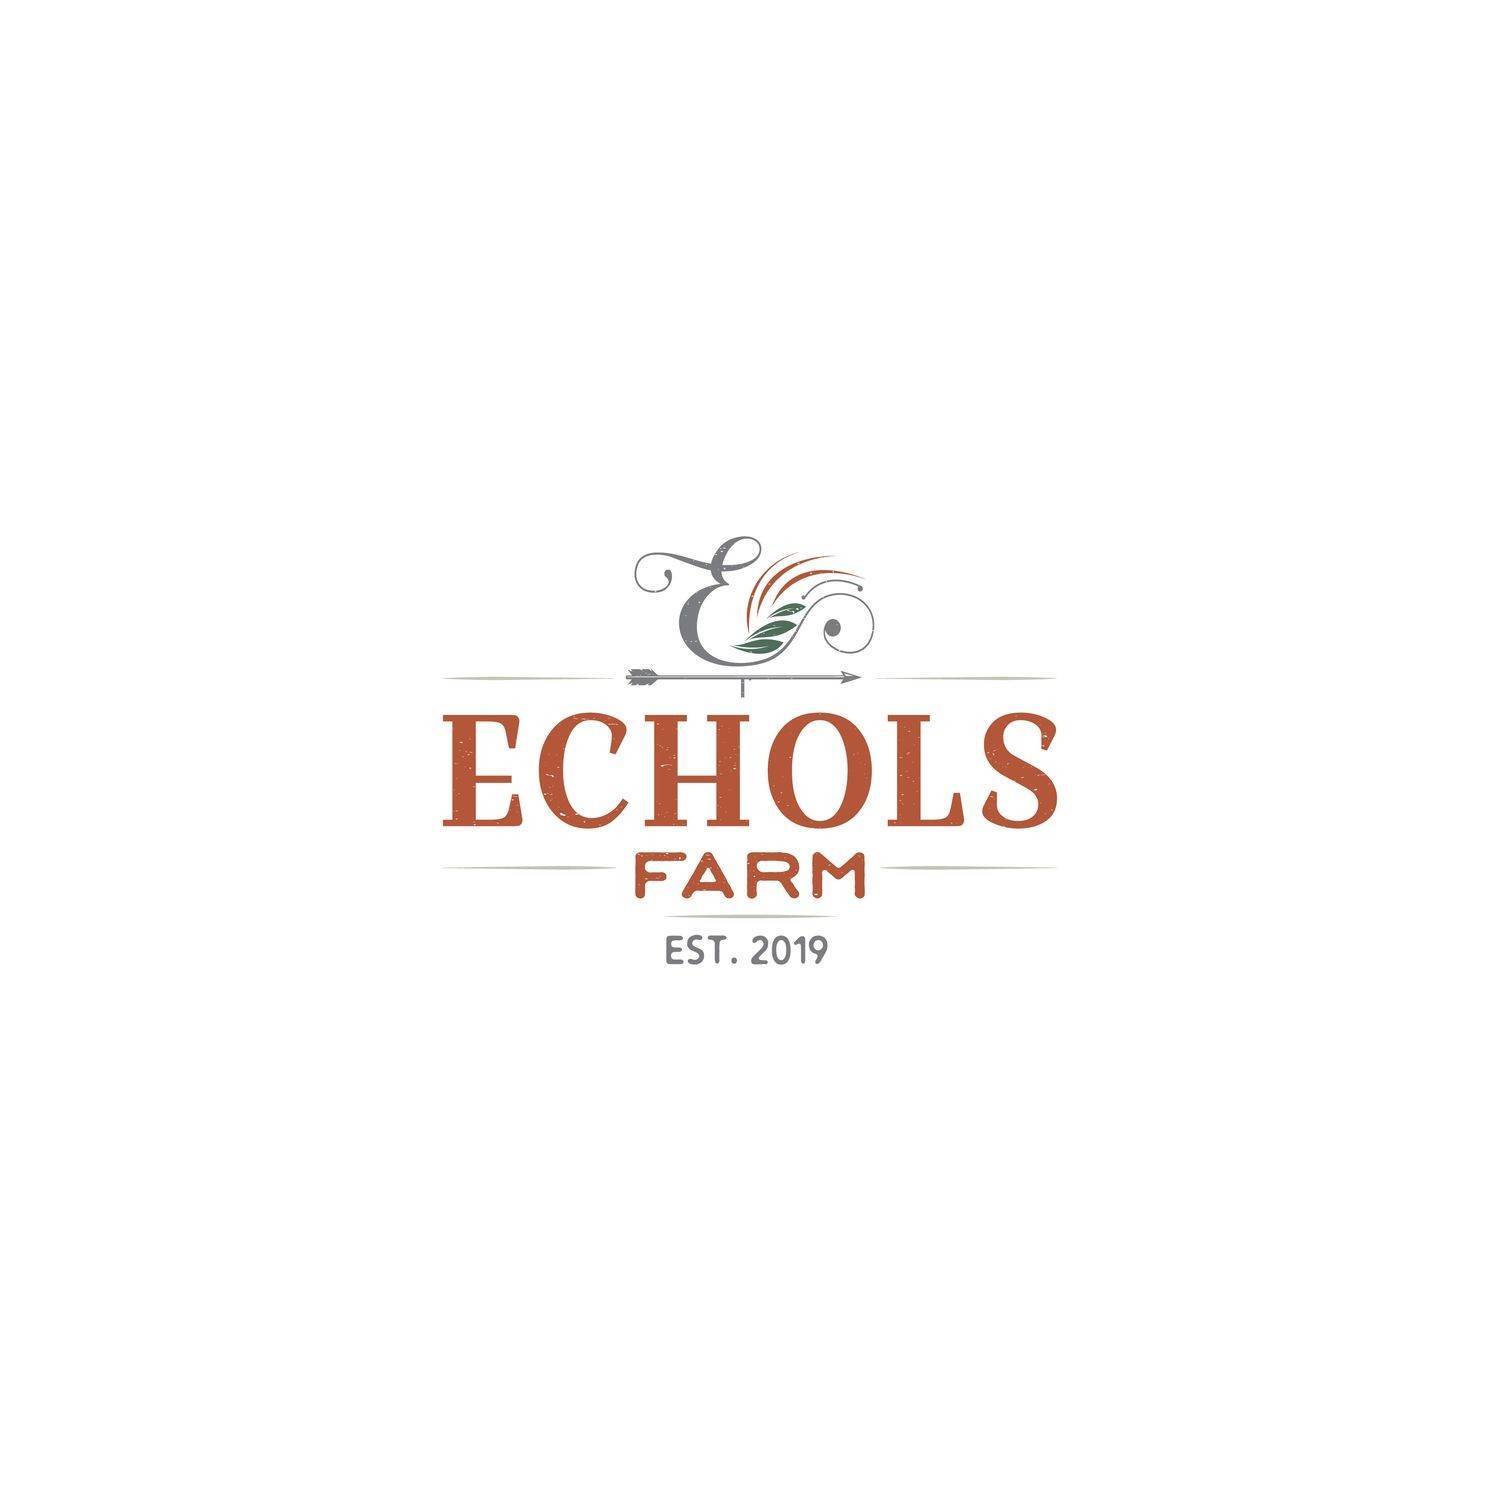 6. Echols Farm κτίριο σε 4511 Macland Road, Hiram, GA 30141